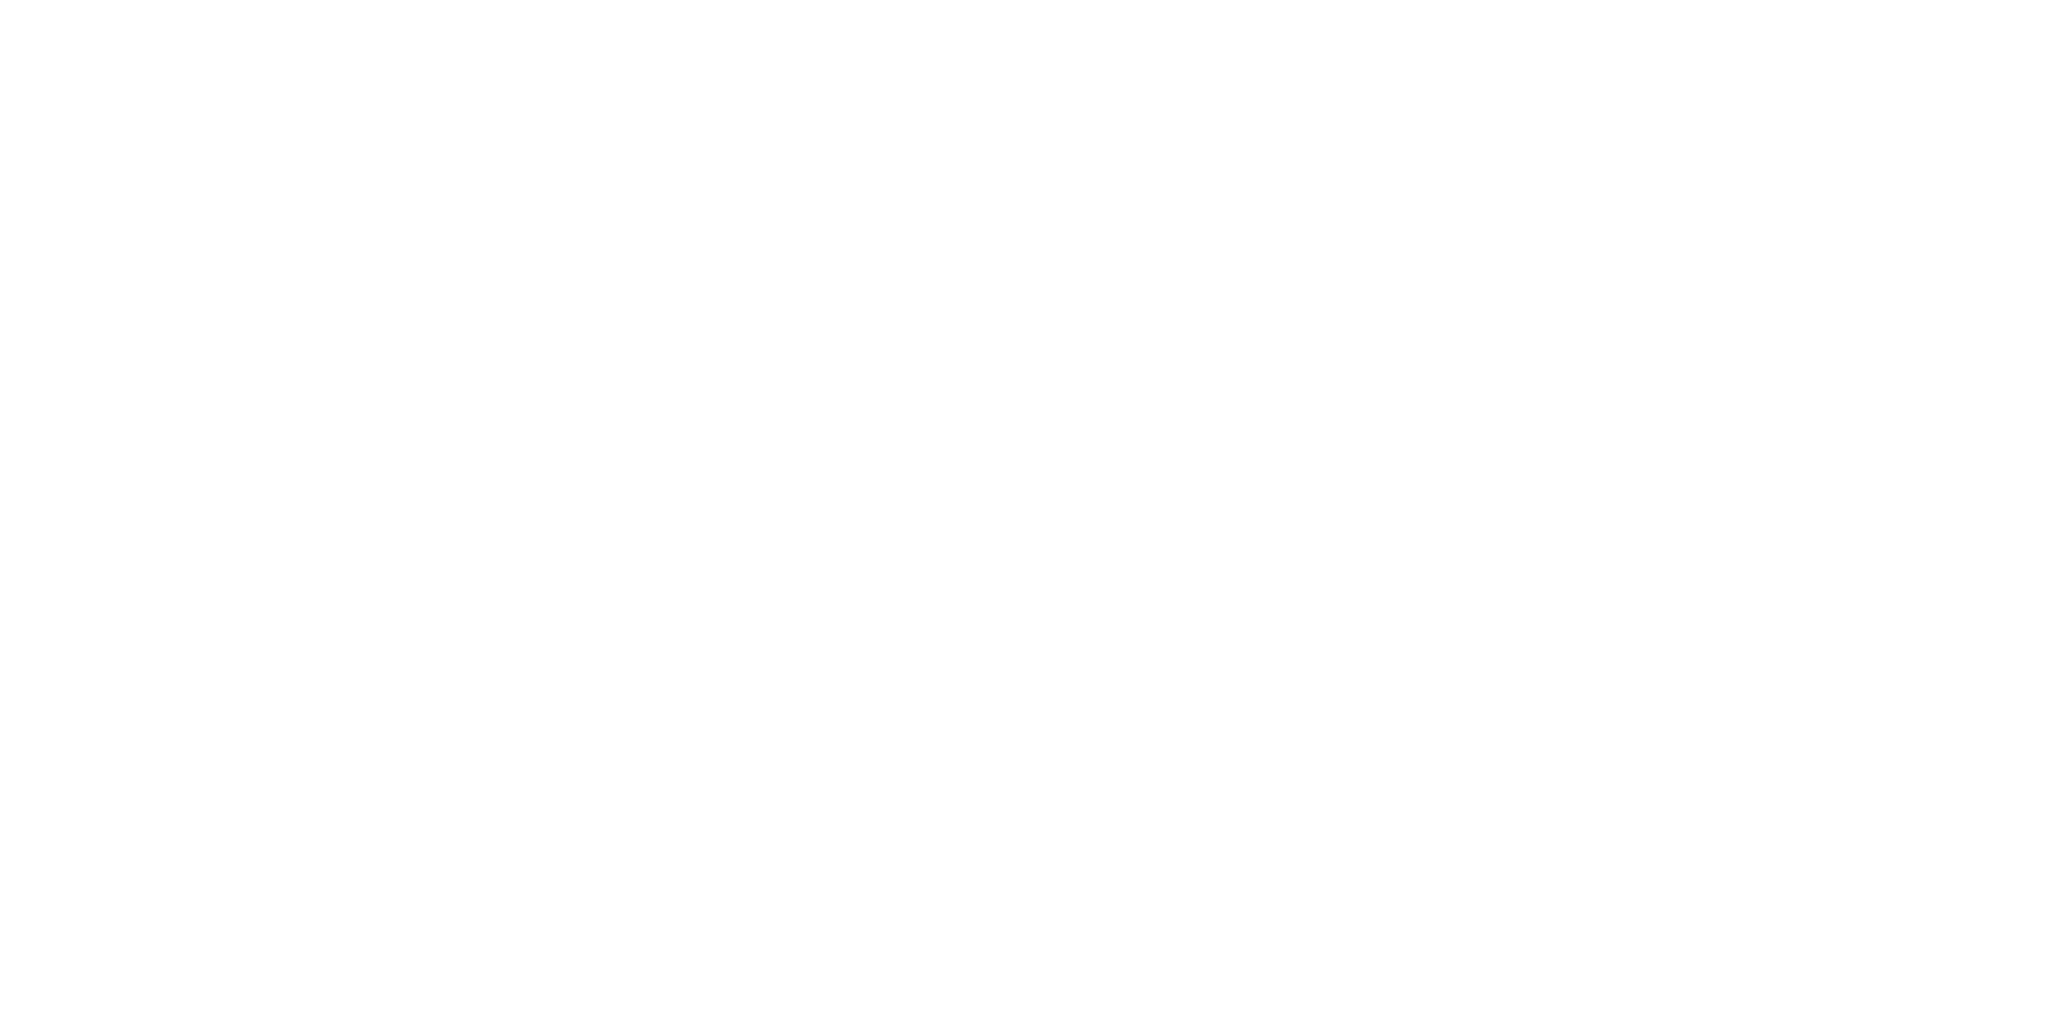 Dr Waldemar Penna